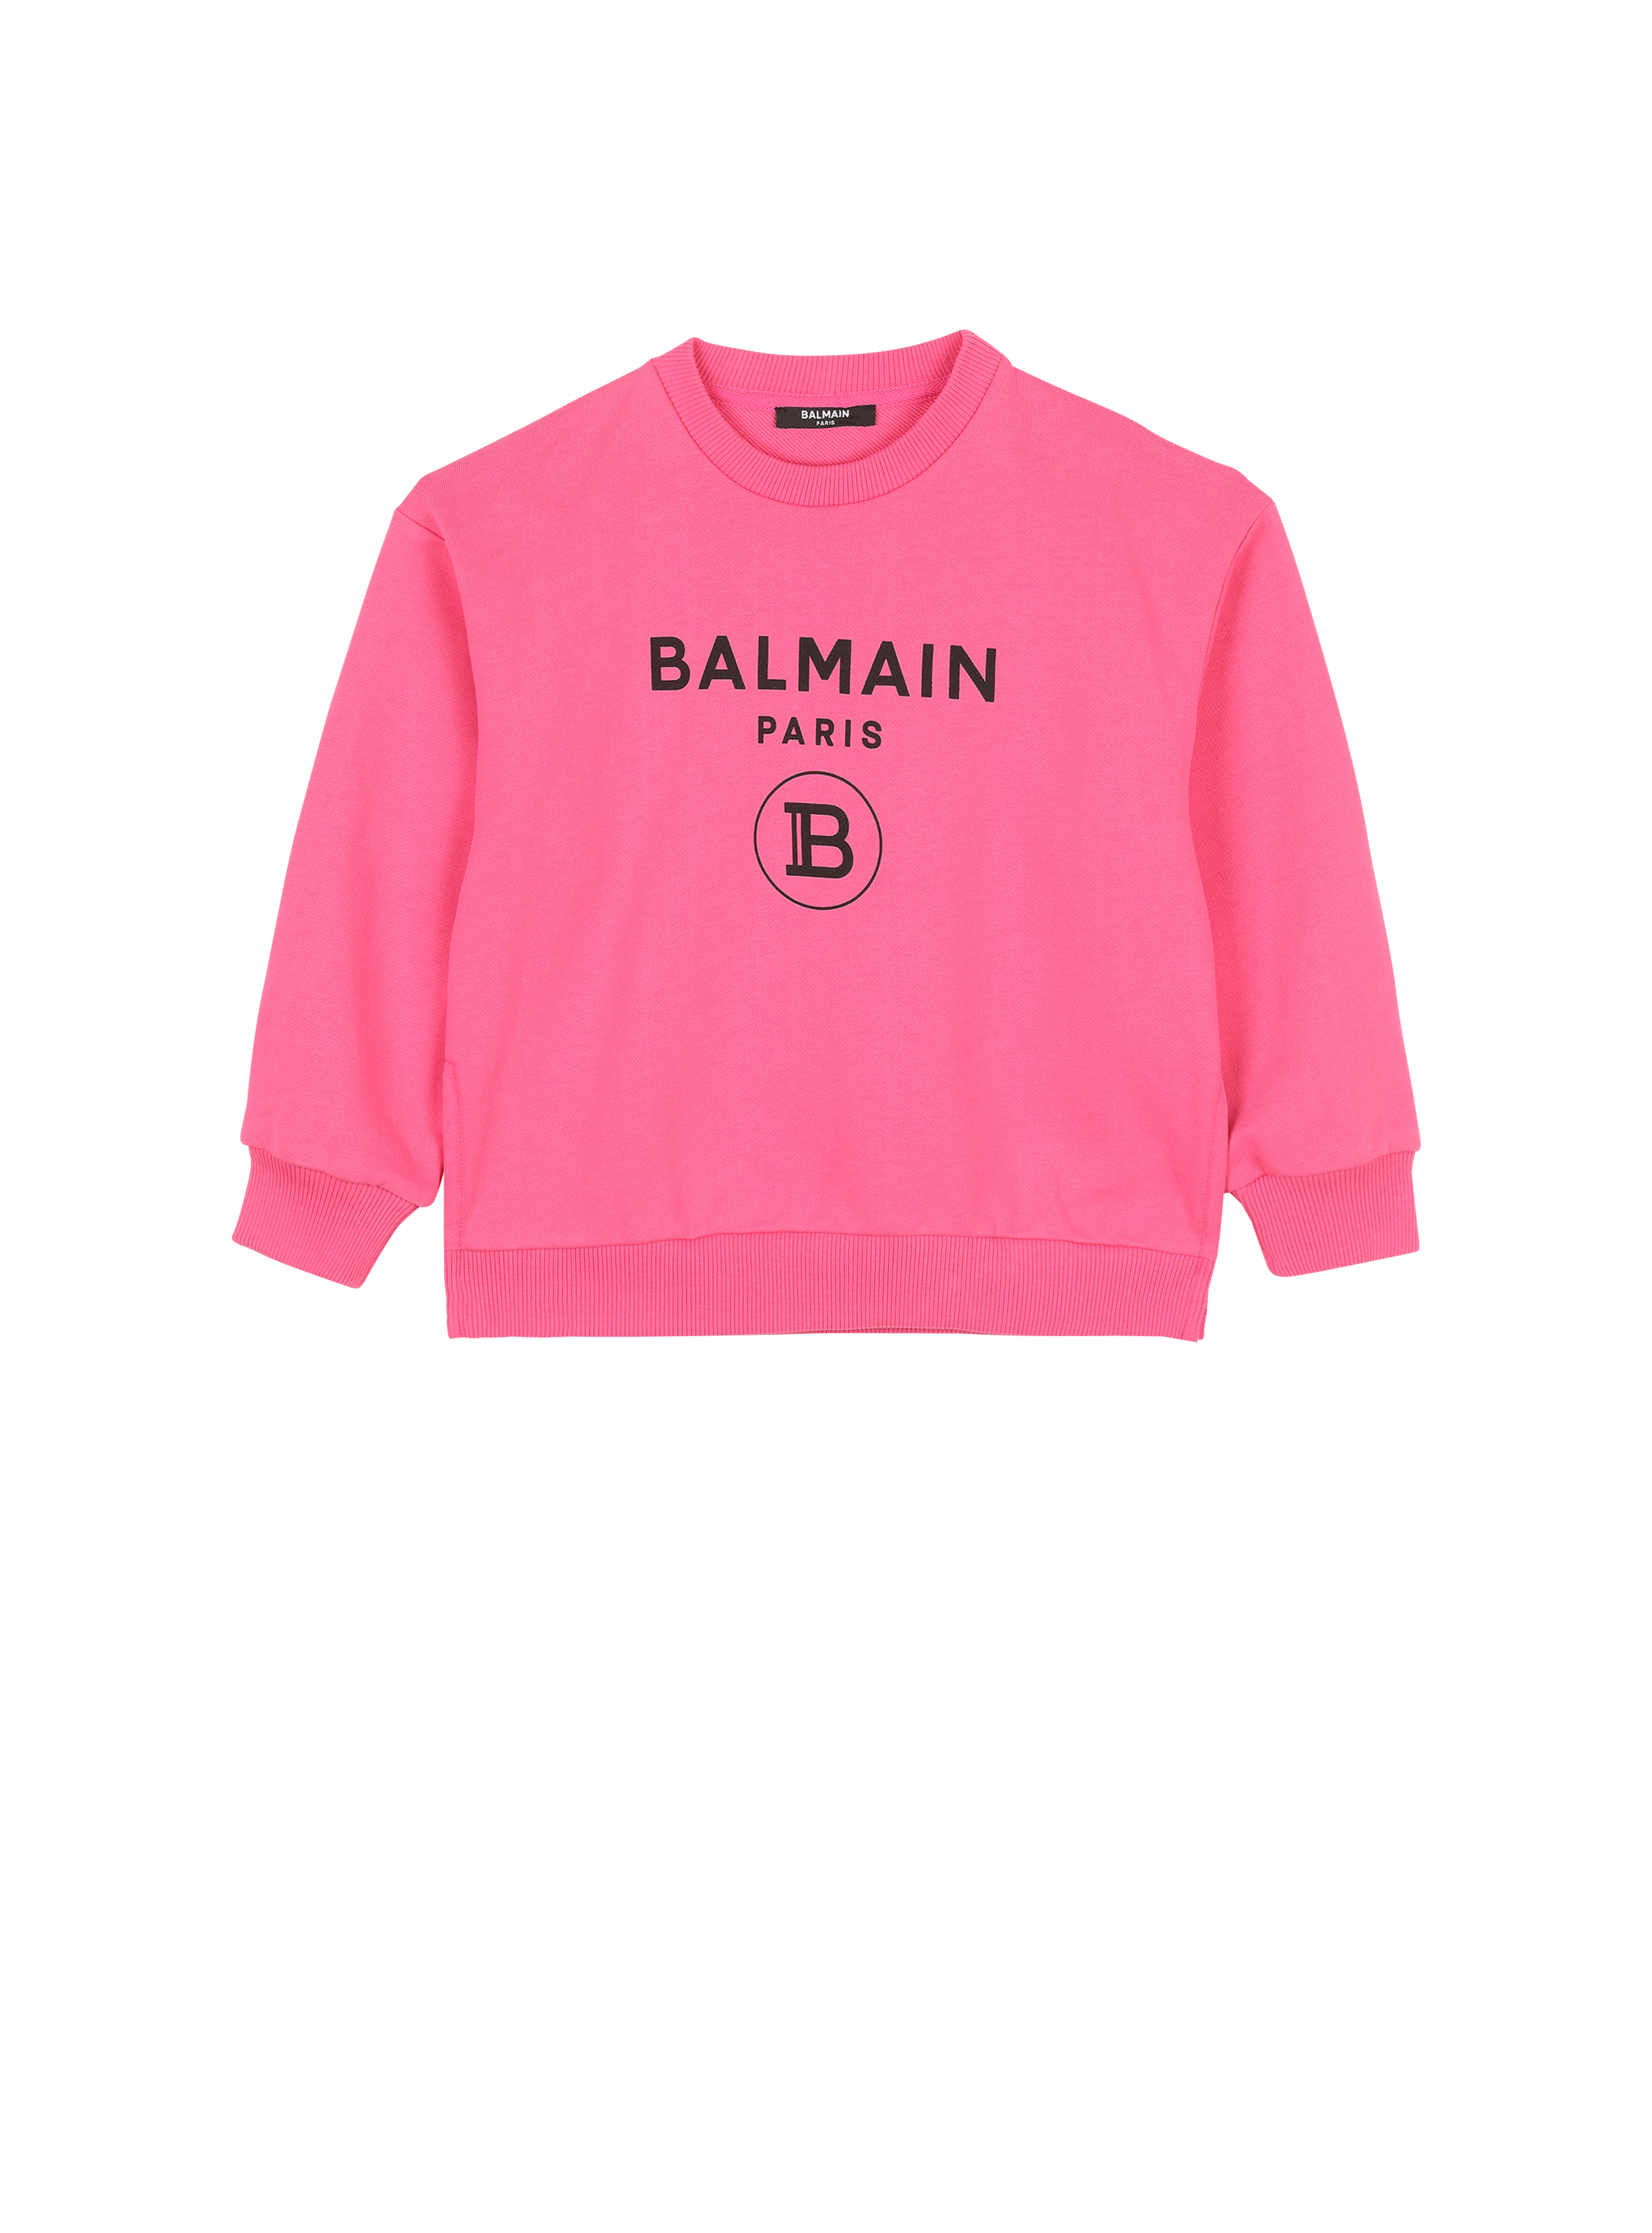 Balmain 로고 코튼 스웨터, 핑크색